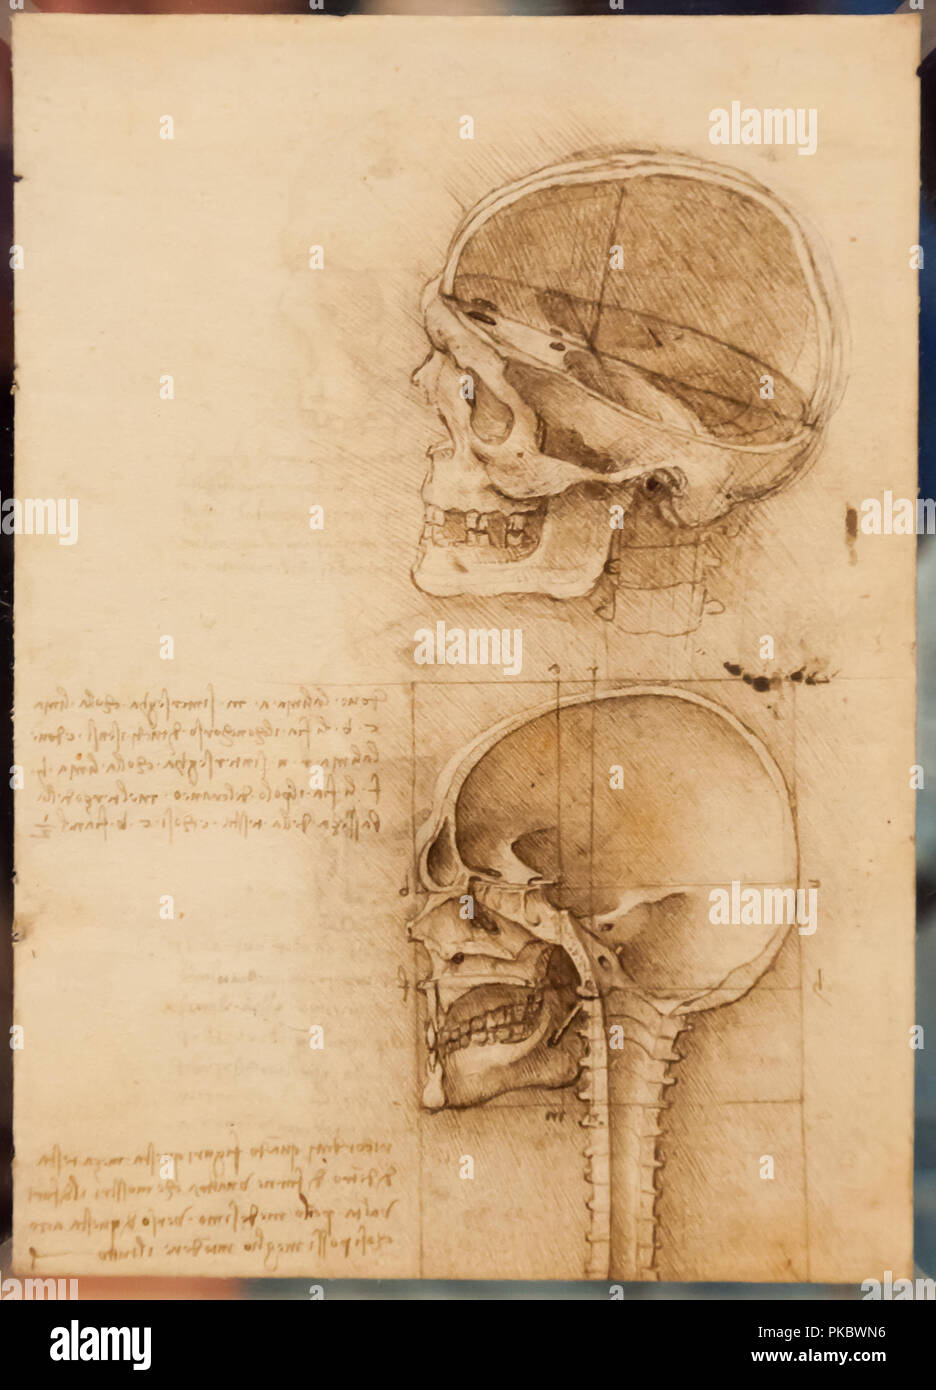 Leonardo da Vinci umana del cranio e della colonna vertebrale di disegno anatomico presso la Queen's Gallery di Londra, England, Regno Unito Foto Stock